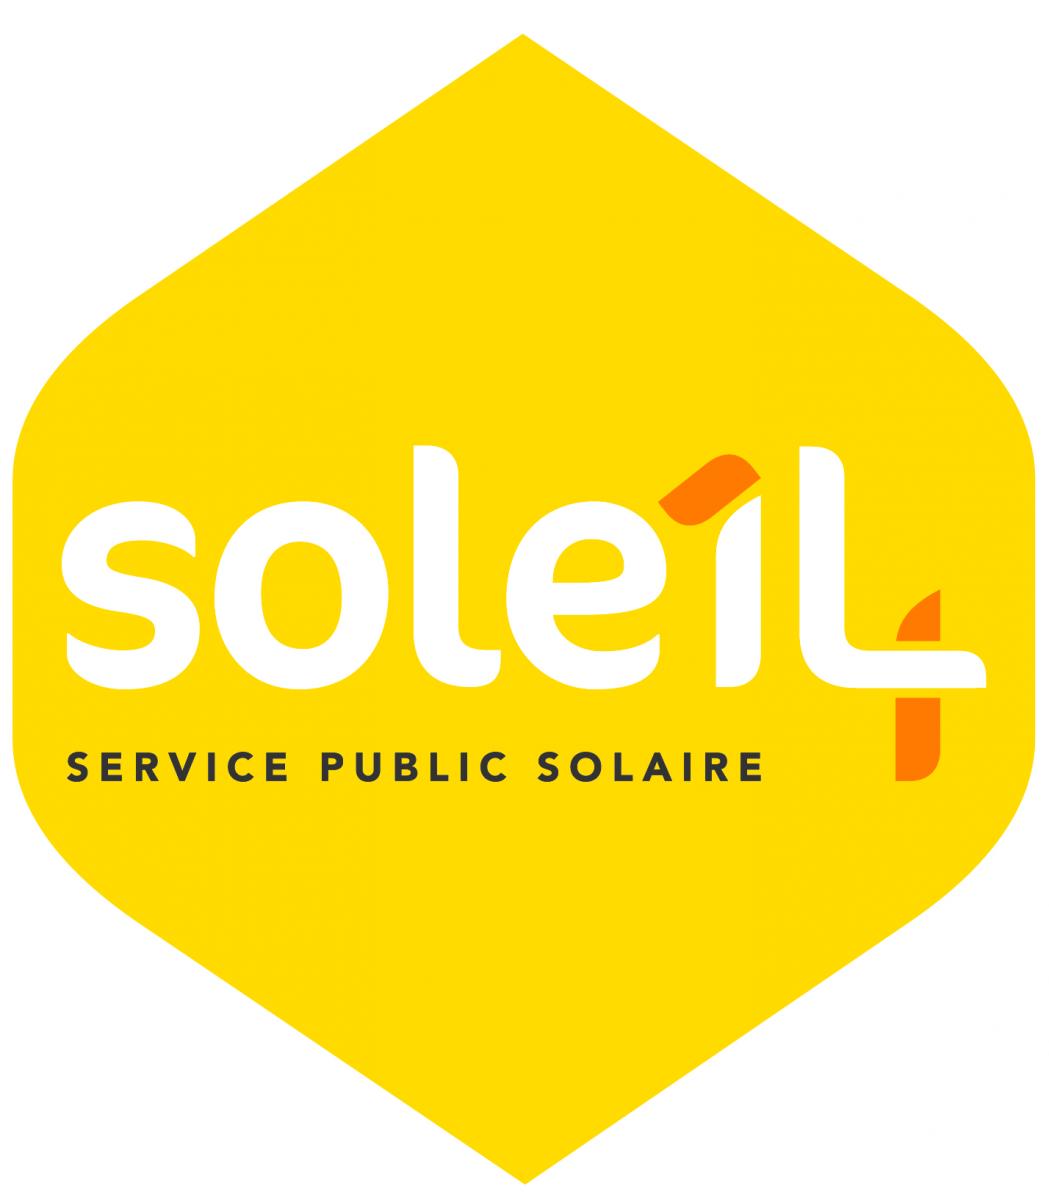 Soleil 14 Service public solaire